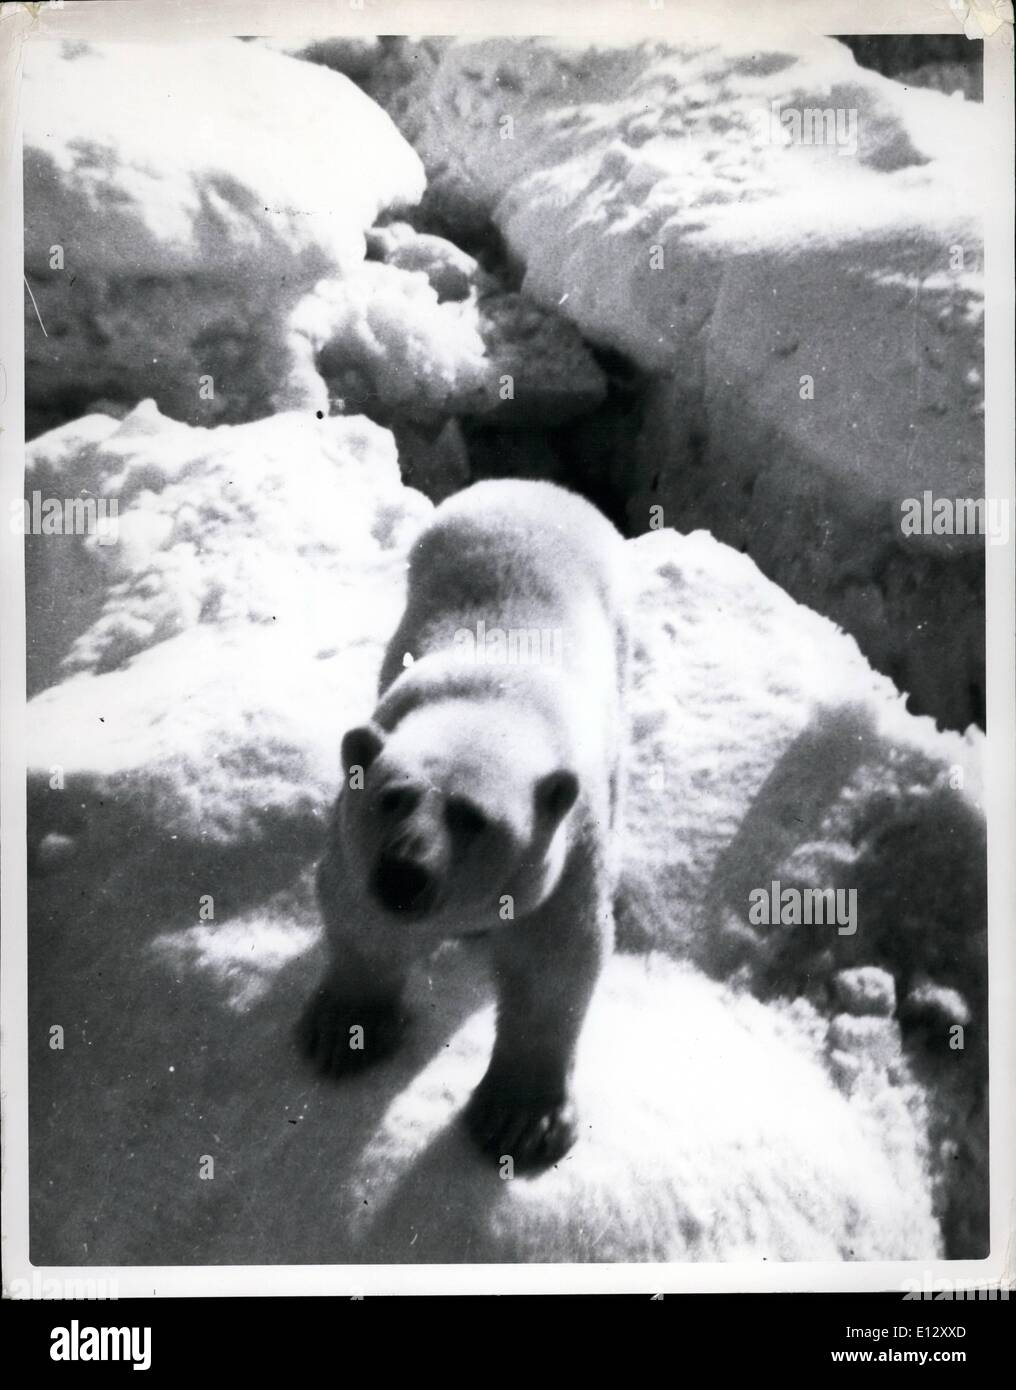 25. Februar 2012 - Januar 1955 arktischen Nachschub Mission (Sunec). Willkommen in der Arktis Mr Bear könnte in diesem Porträt sagen. Das Fett Tier schien entwickelt eine Zuneigung für seine Besucher und sogar schwammen eine Meile heraus zum Meer, um sie zu besuchen. Stockfoto